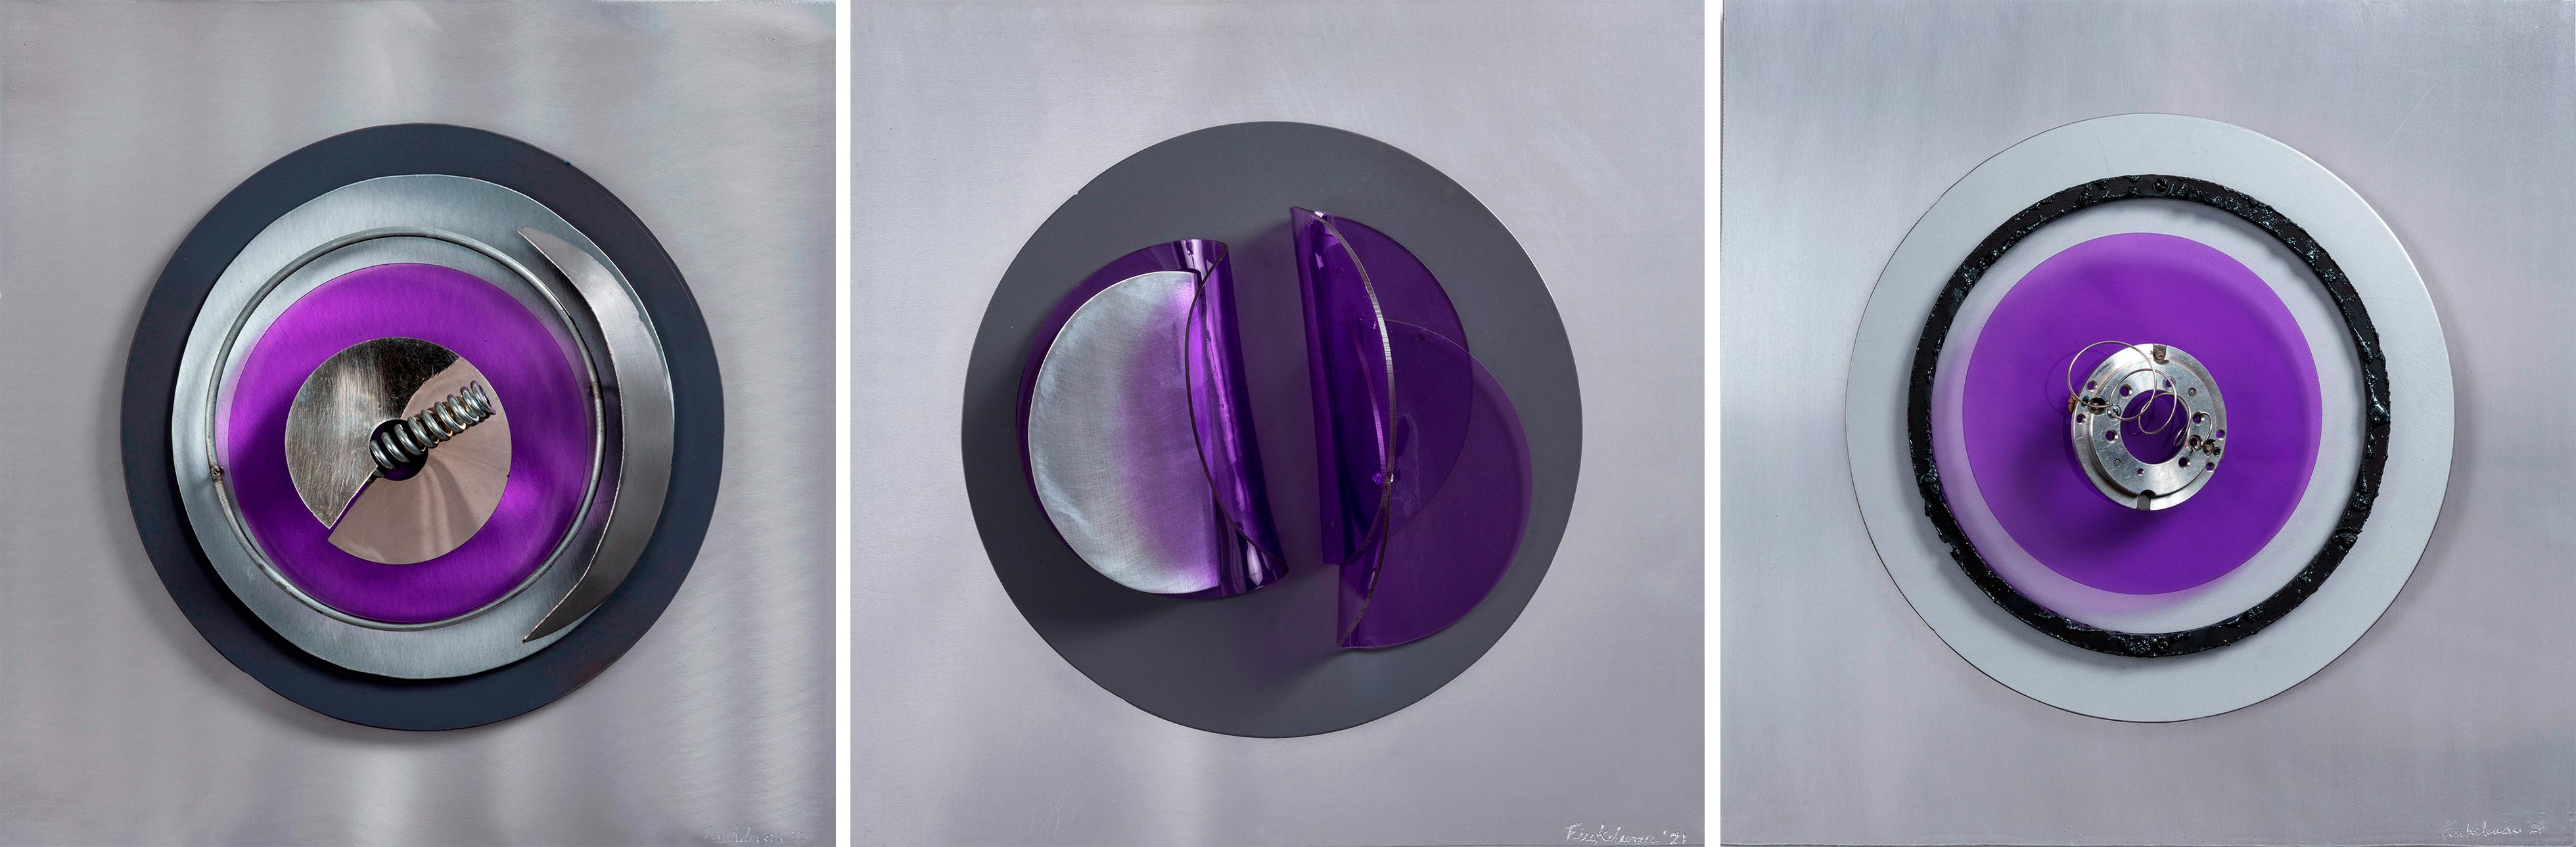 Fanny Szyller Finkelman Abstract Sculpture – Assembler Violeta N° 1, 2 und 3 .abstrakte Mixed Media Wandskulptur